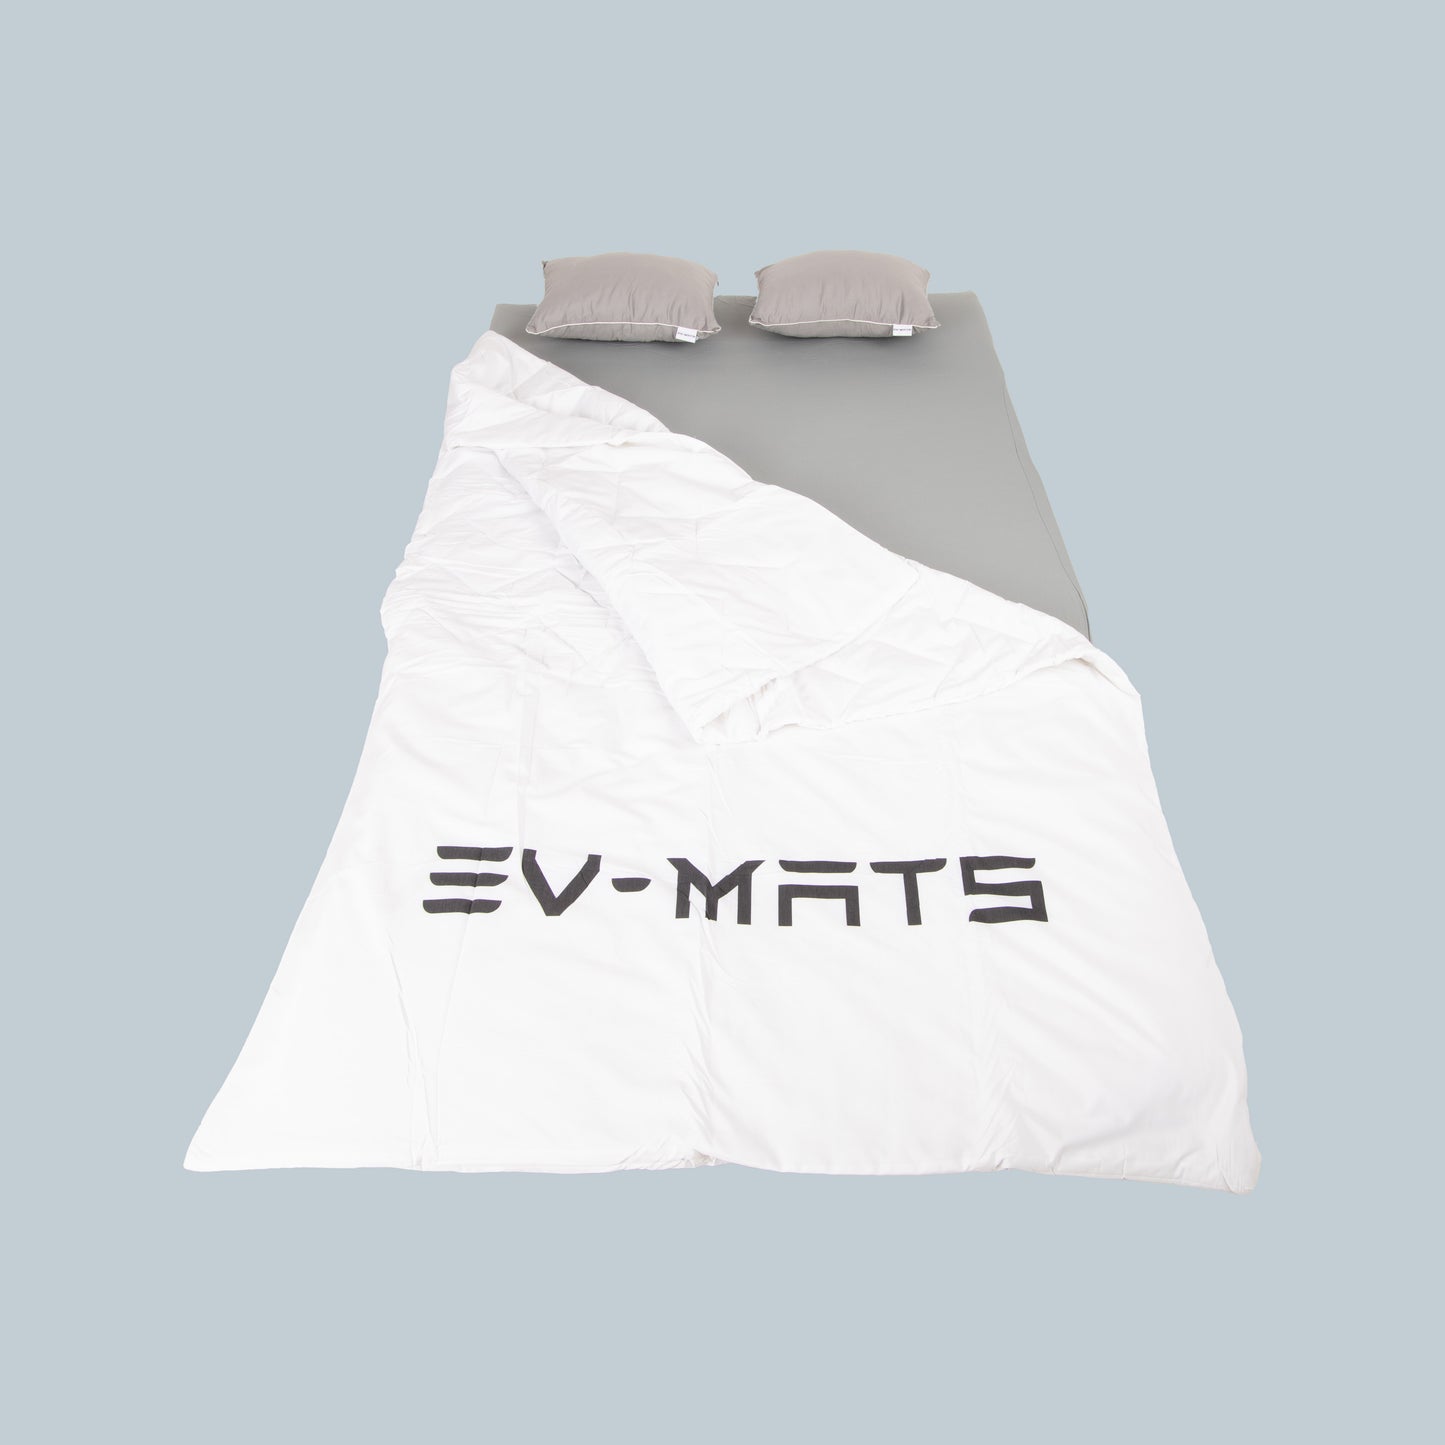 EV-MATS Basic CAMP SET, Tesla Model 3 için Tesla yatağı, Tesla Model 3'ün arka bagajına uygun su geçirmez çanta, bir çarşaf, bir yorgan, 2 yastık ve bir yastık kılıfını içerir